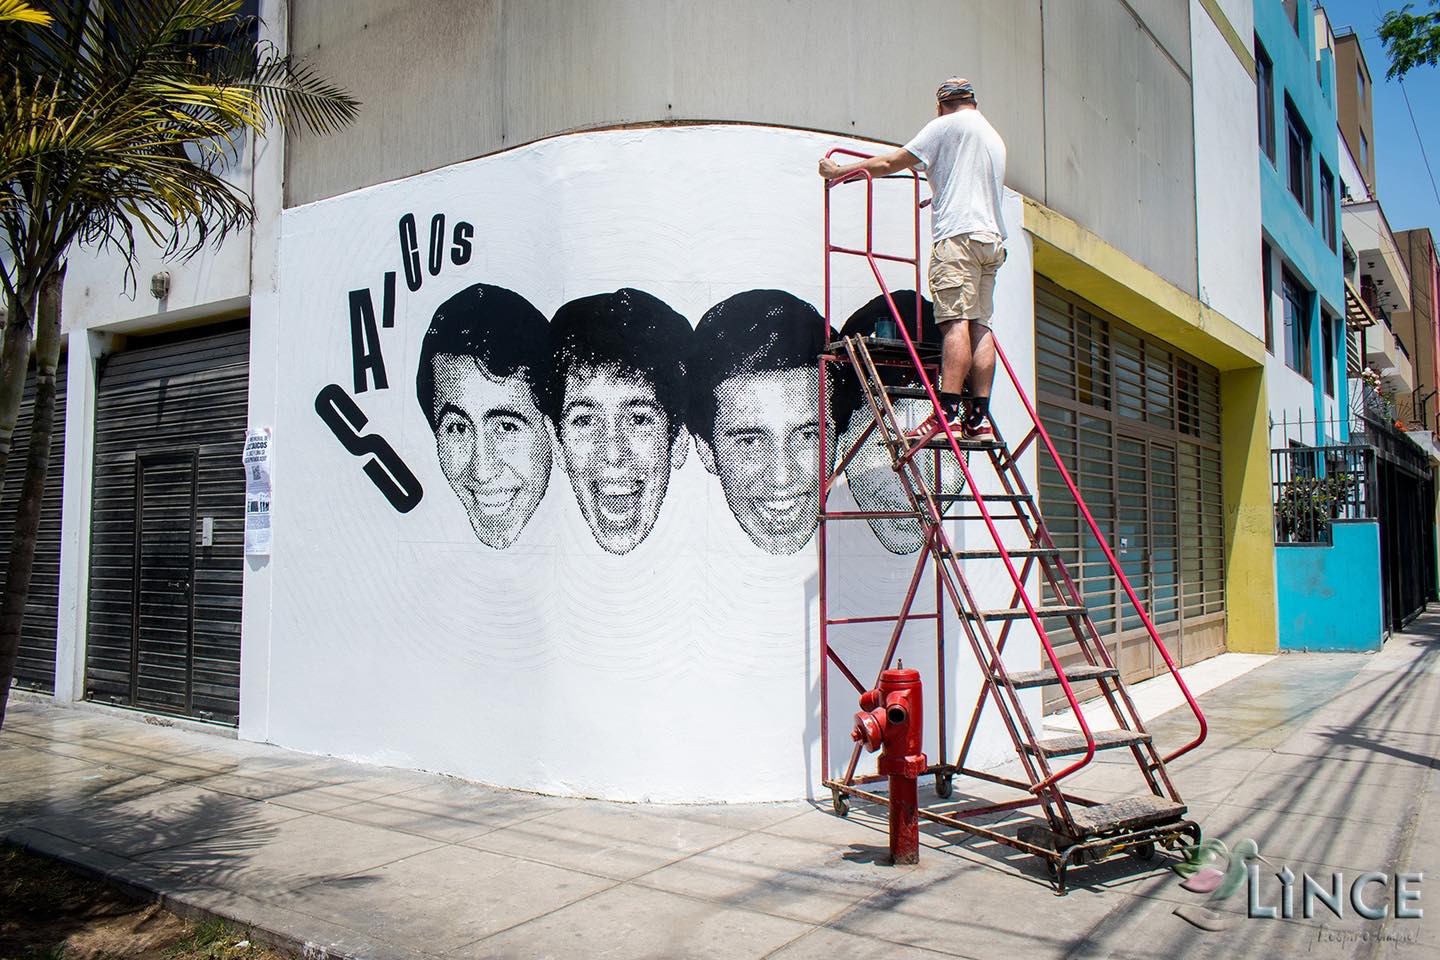 Homenaje a “Los Saicos” en el primer mural cultural de Lince